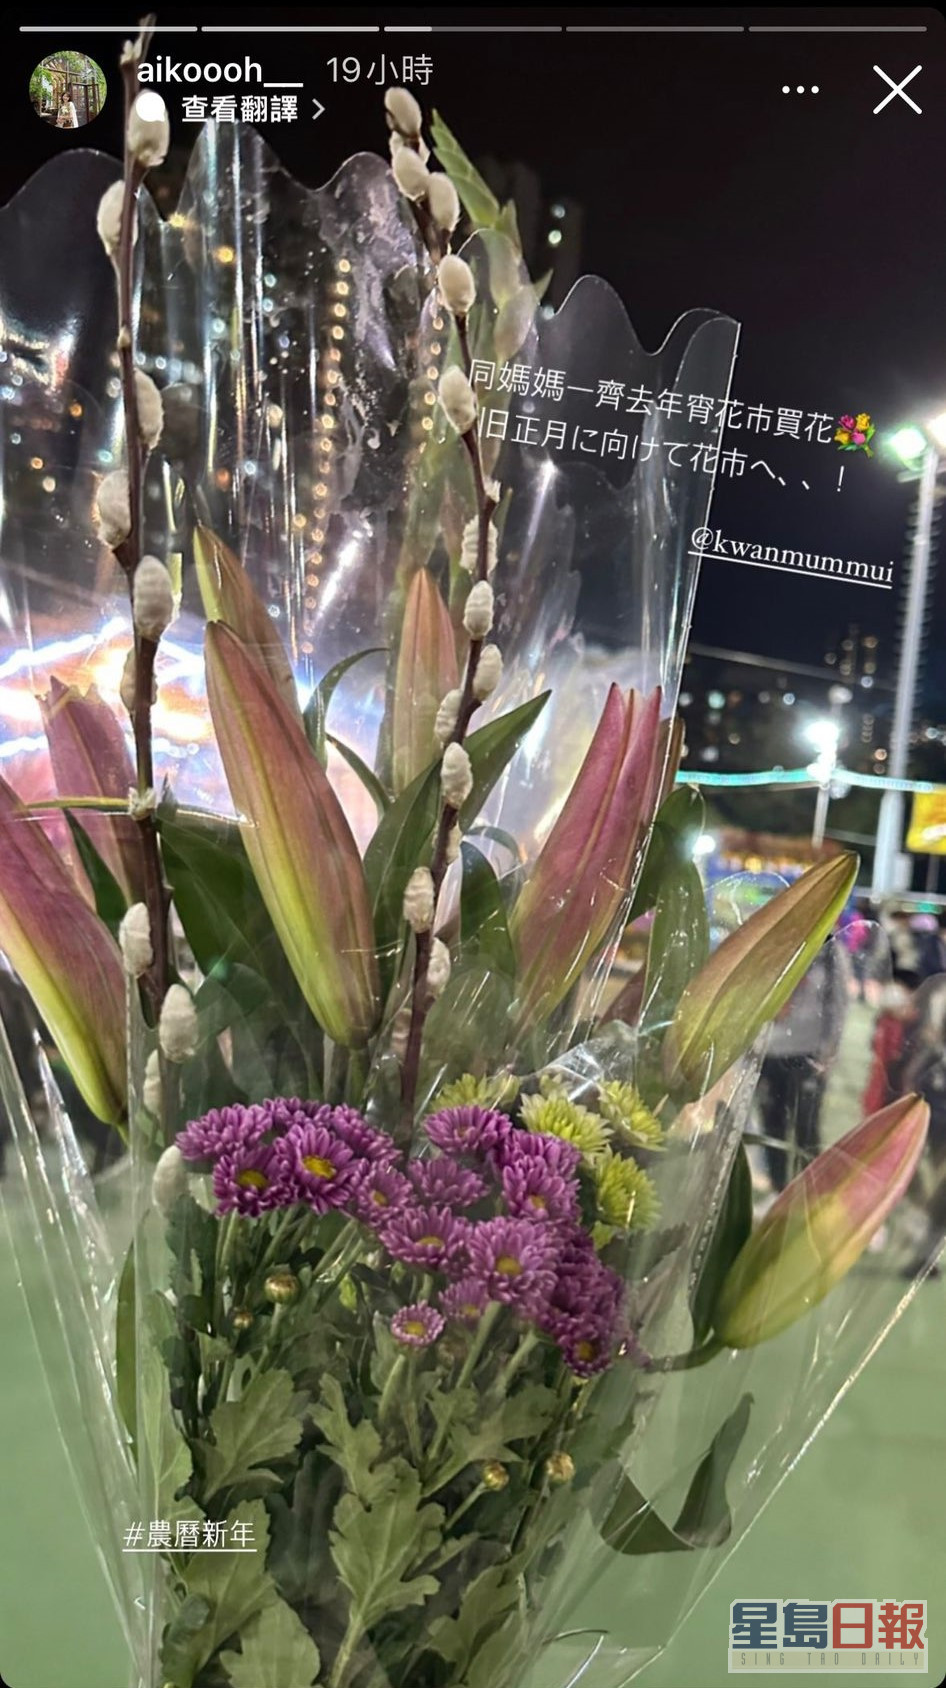 最後濱口愛子陪奶奶買了幾束花。